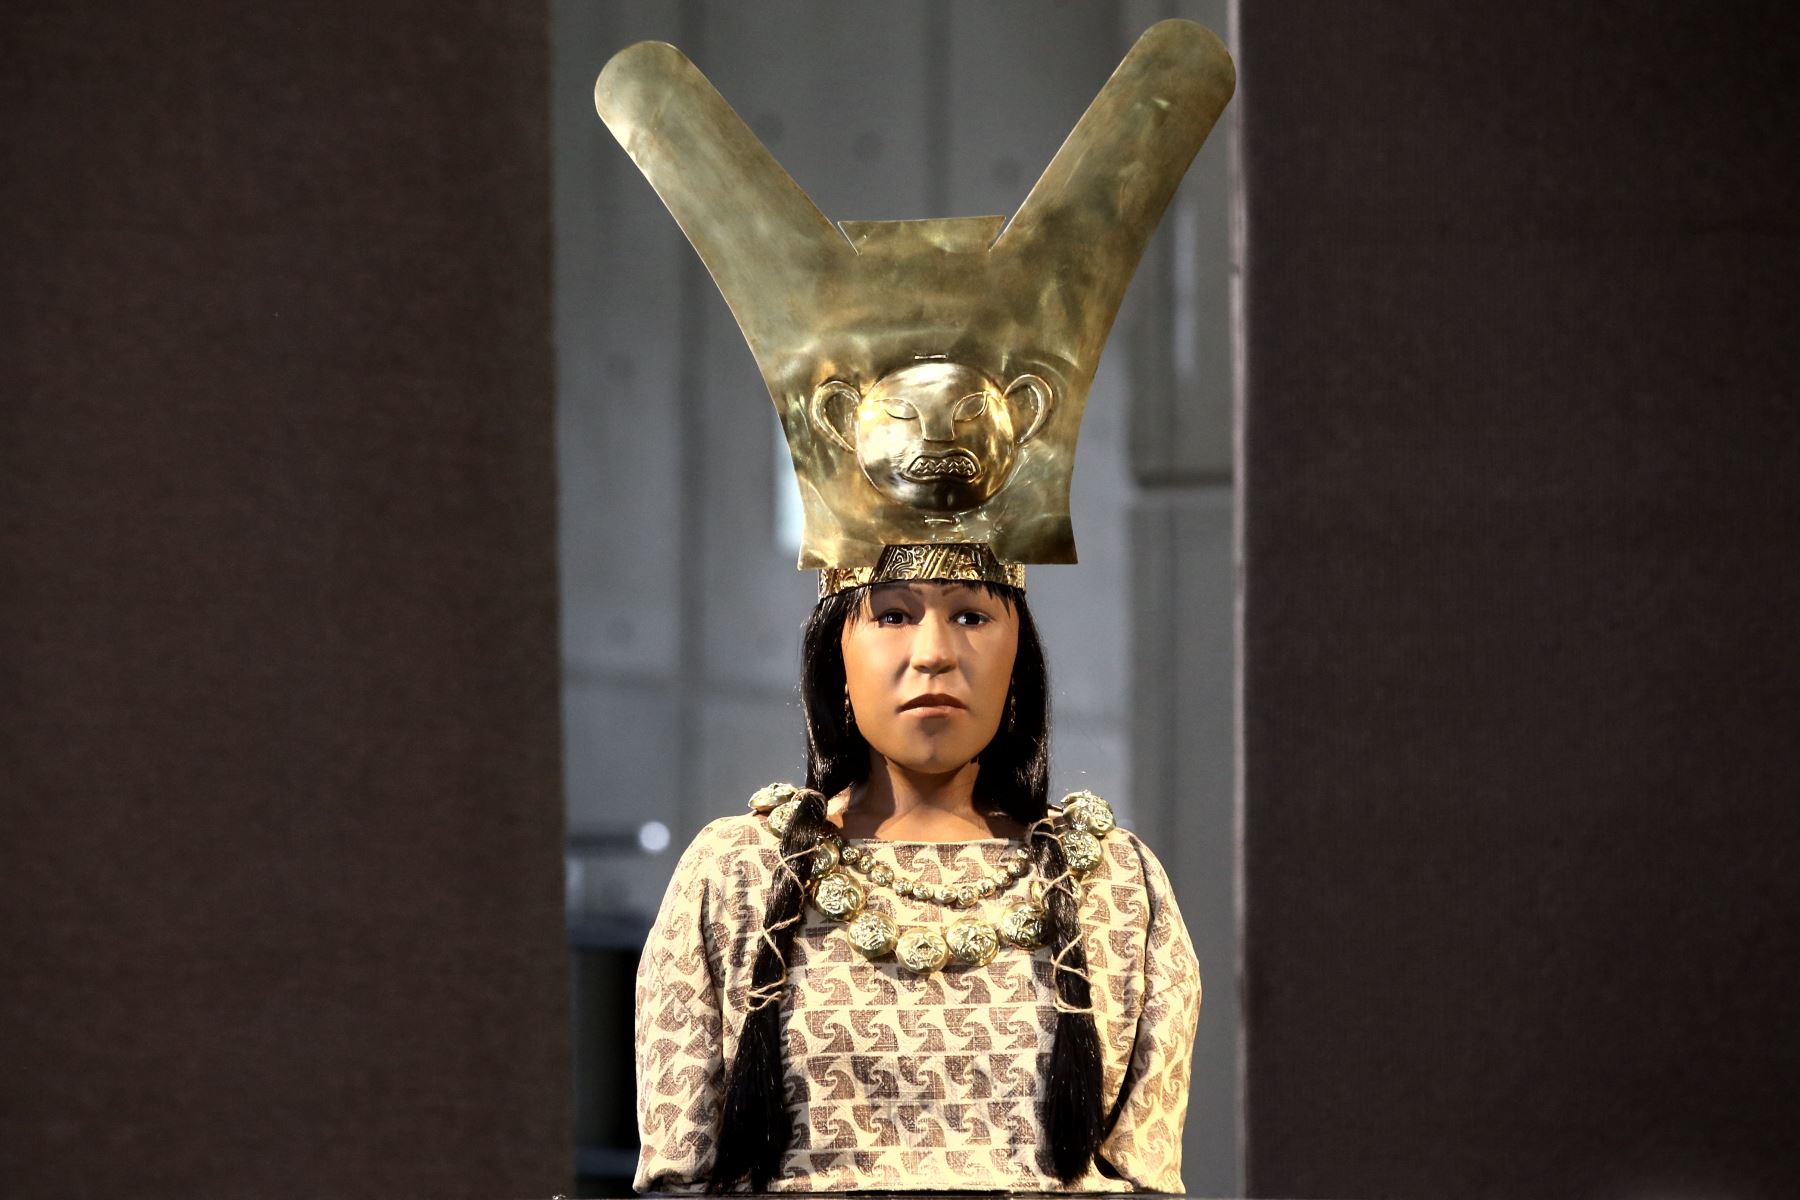 La Señora de Cao es el mejor ejemplo del protagonismo que tuvo la mujer en la cultura Moche, determinó una investigación arqueológica encabezada por el arqueólogo Régulo Franco. ANDINA/archivo